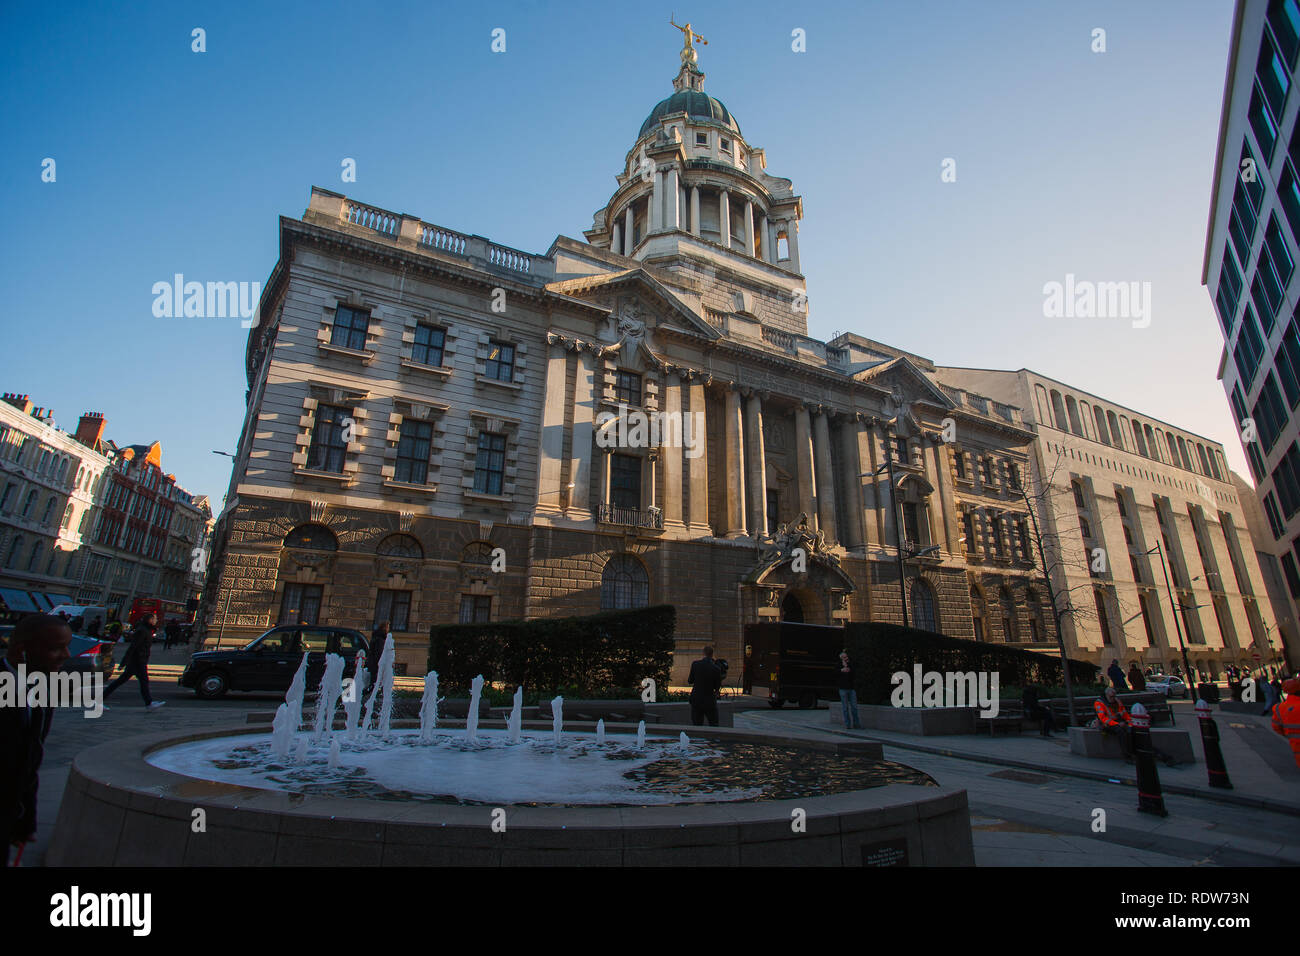 Vue générale de la GV Old Bailey, la Cour pénale centrale, Londres, Angleterre, vu de la rue. Banque D'Images